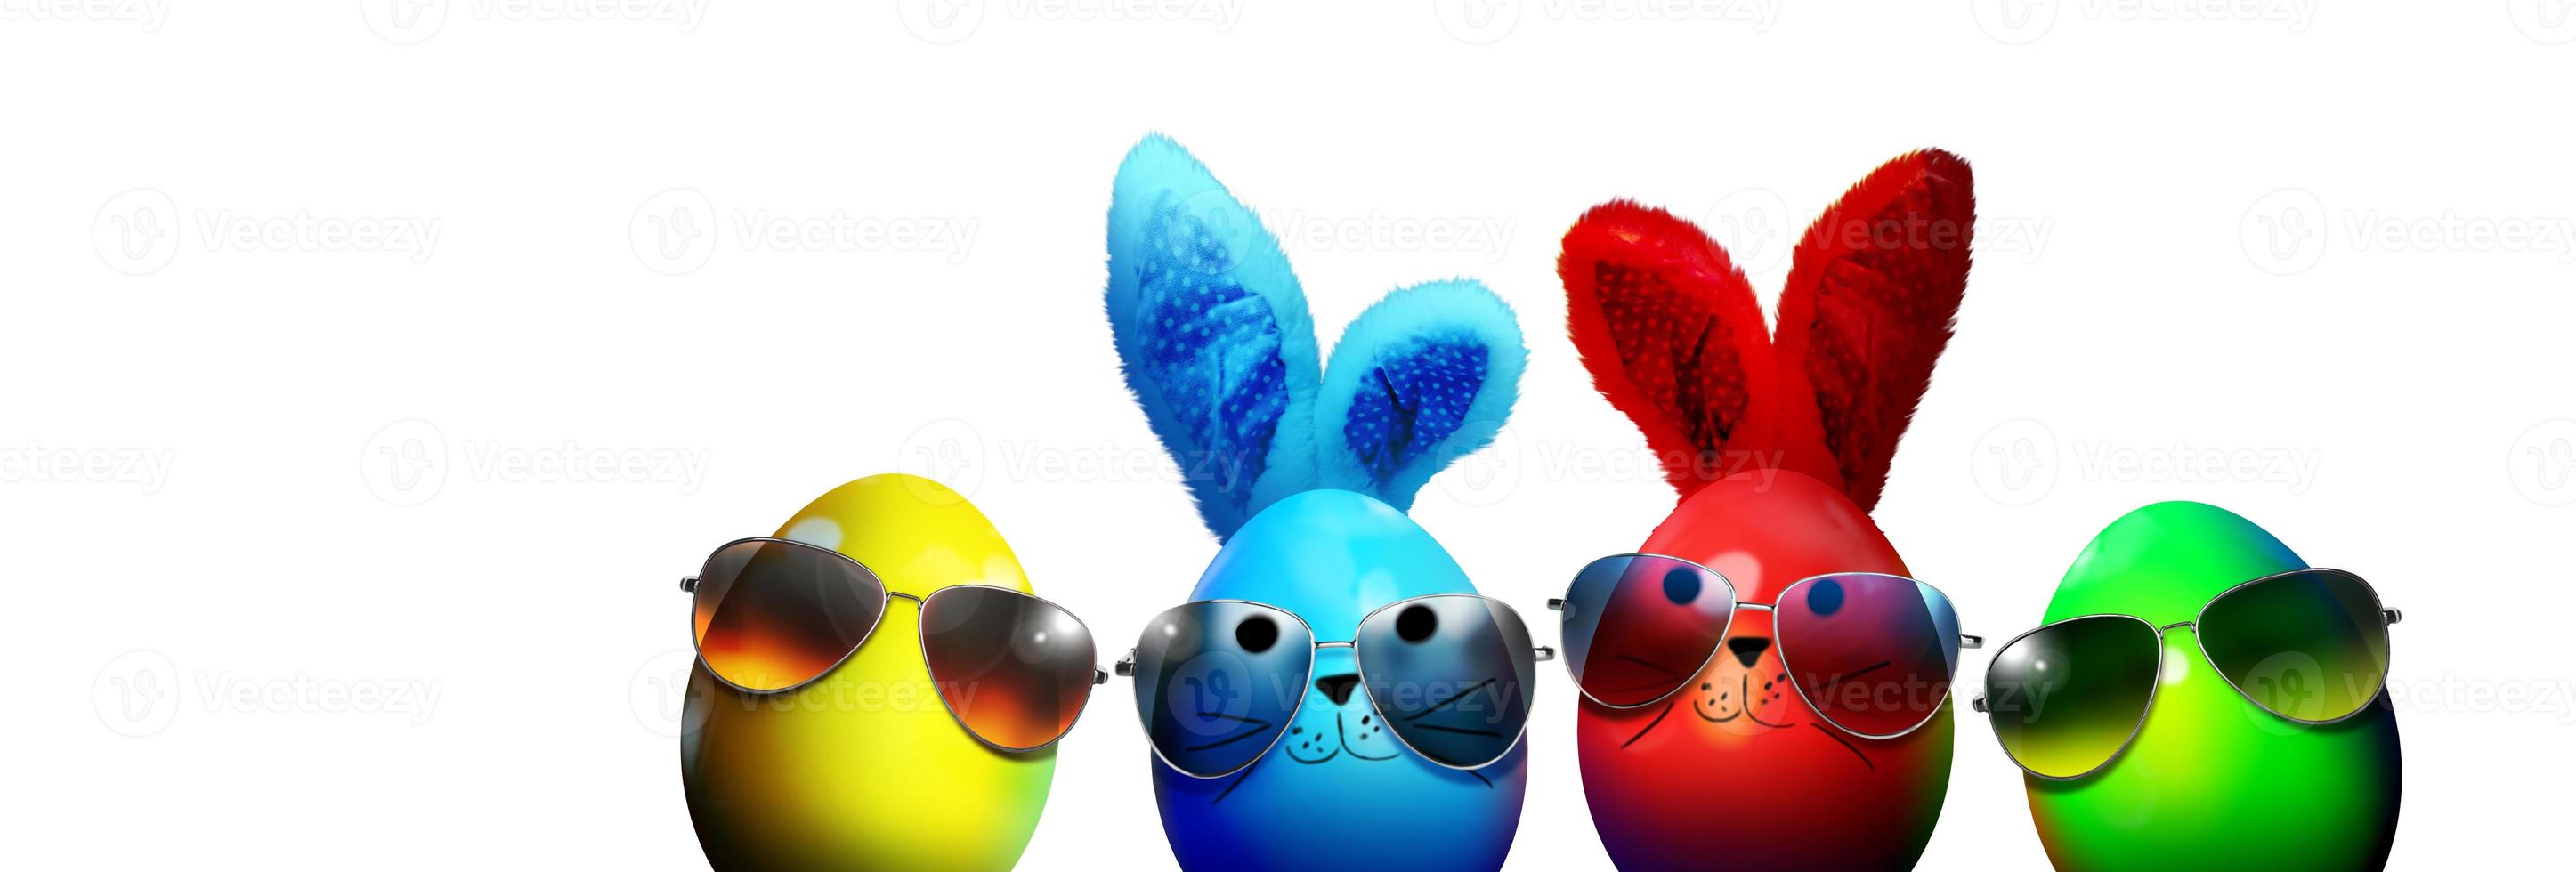 hermoso fondo de pascua con coloridos huevos de pascua foto